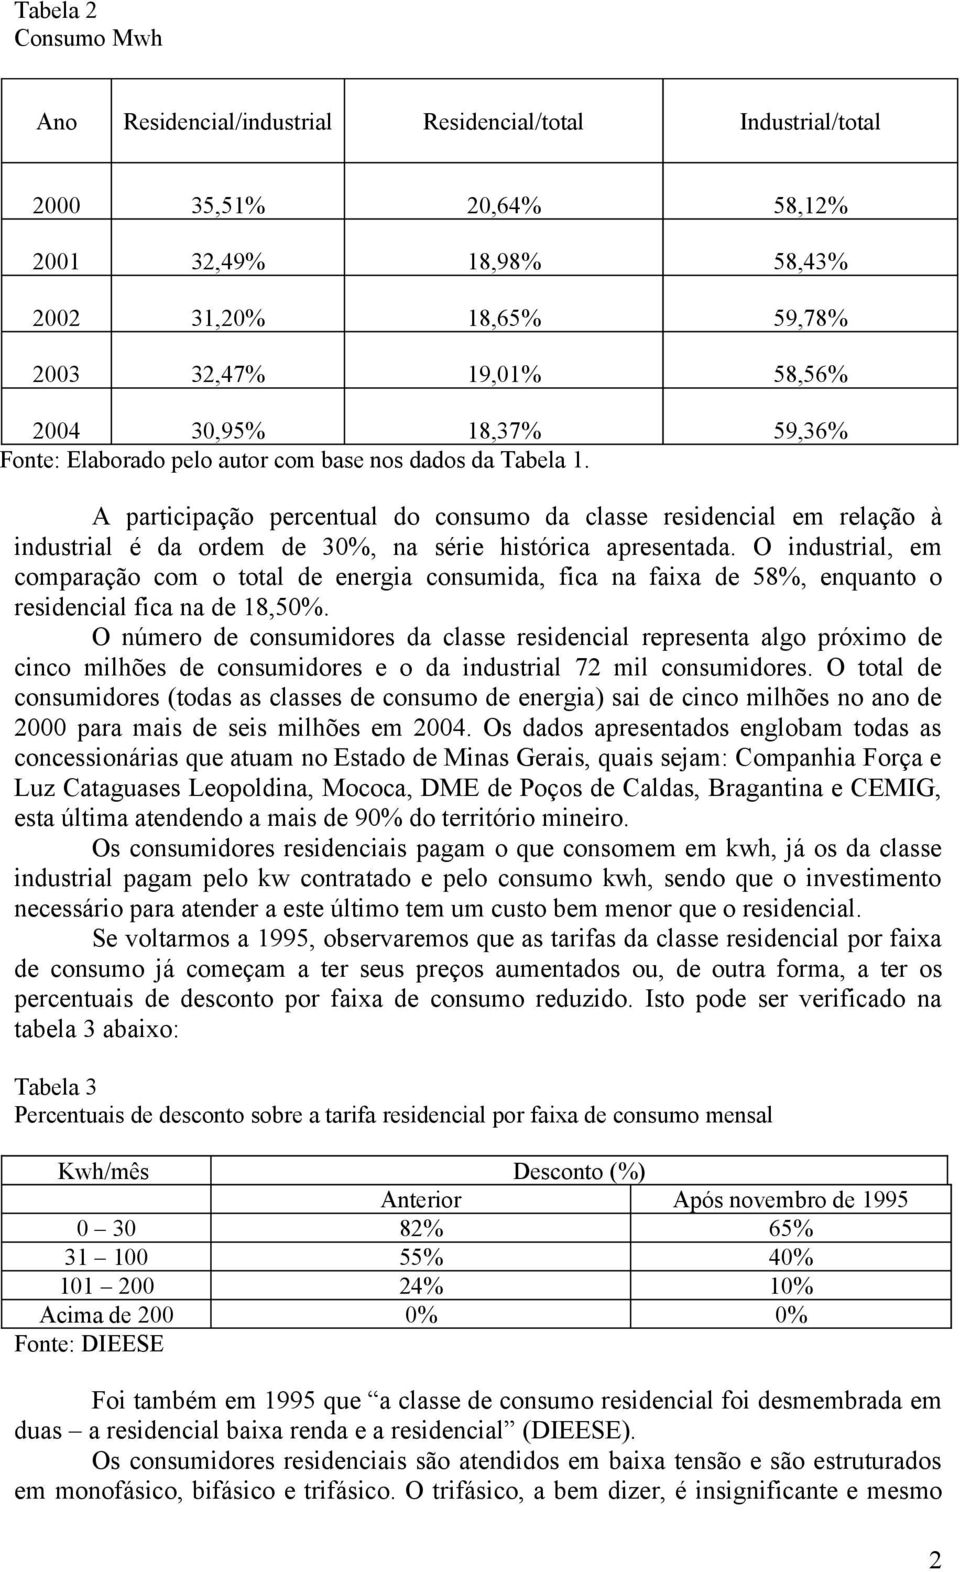 A participação percentual do consumo da classe residencial em relação à industrial é da ordem de 30%, na série histórica apresentada.